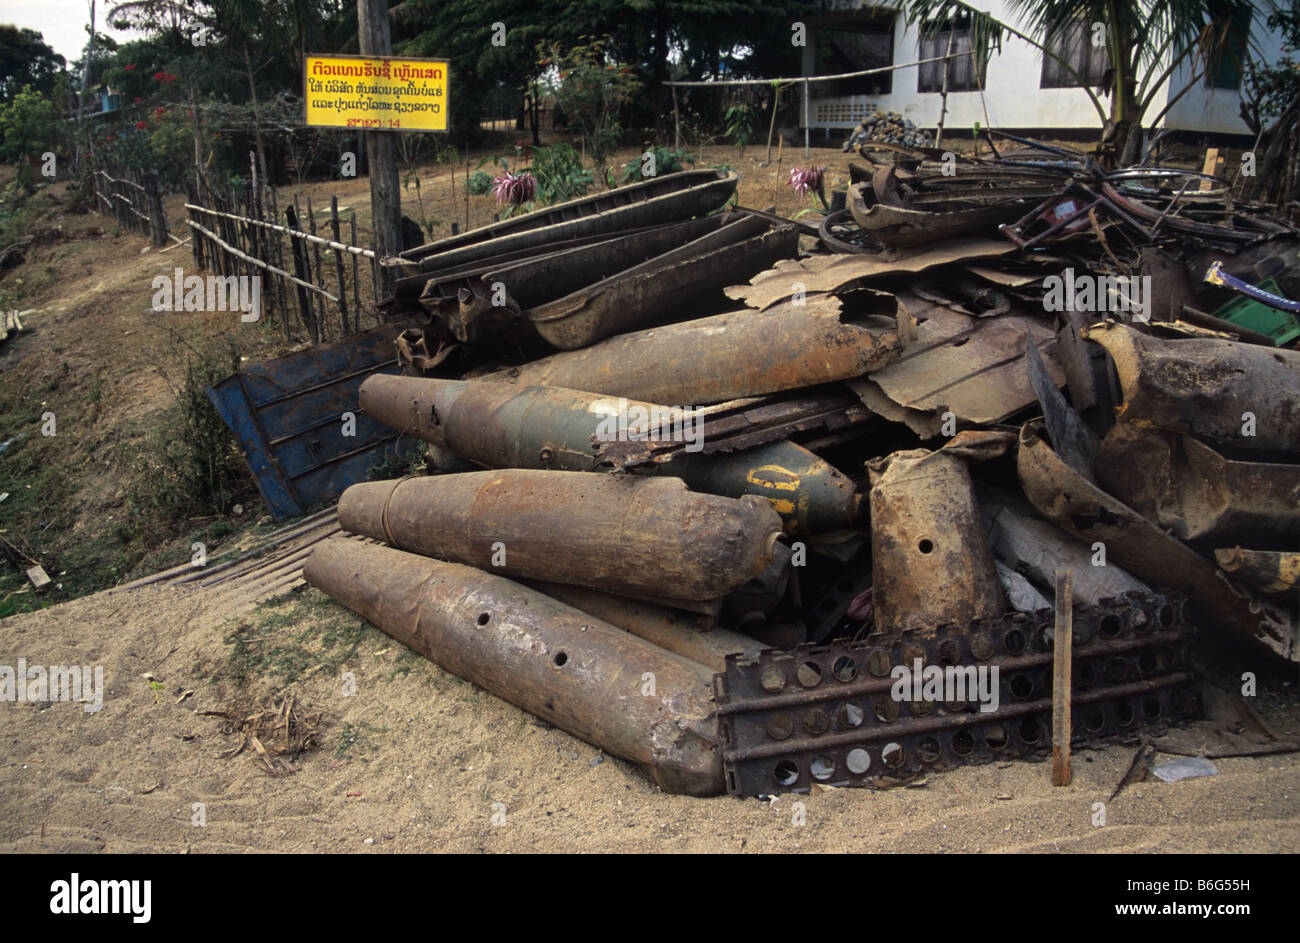 Scrap metal yard with US Vietnam War-era war scrap, cluster bomb casings and missiles, Phonsavan, Laos Stock Photo